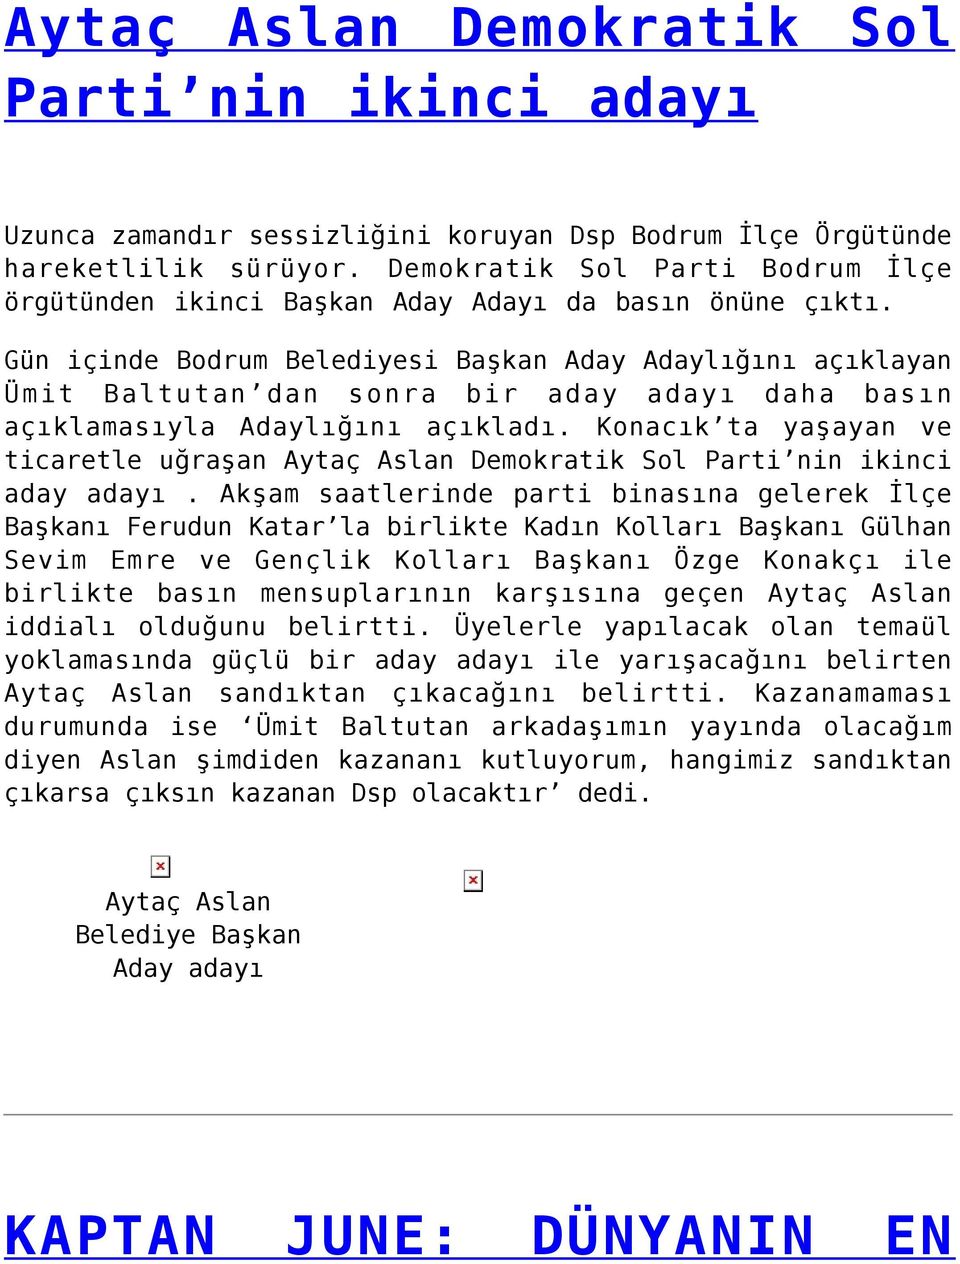 Gün içinde Bodrum Belediyesi Başkan Aday Adaylığını açıklayan Ümit Baltutan dan sonra bir aday adayı daha basın açıklamasıyla Adaylığını açıkladı.